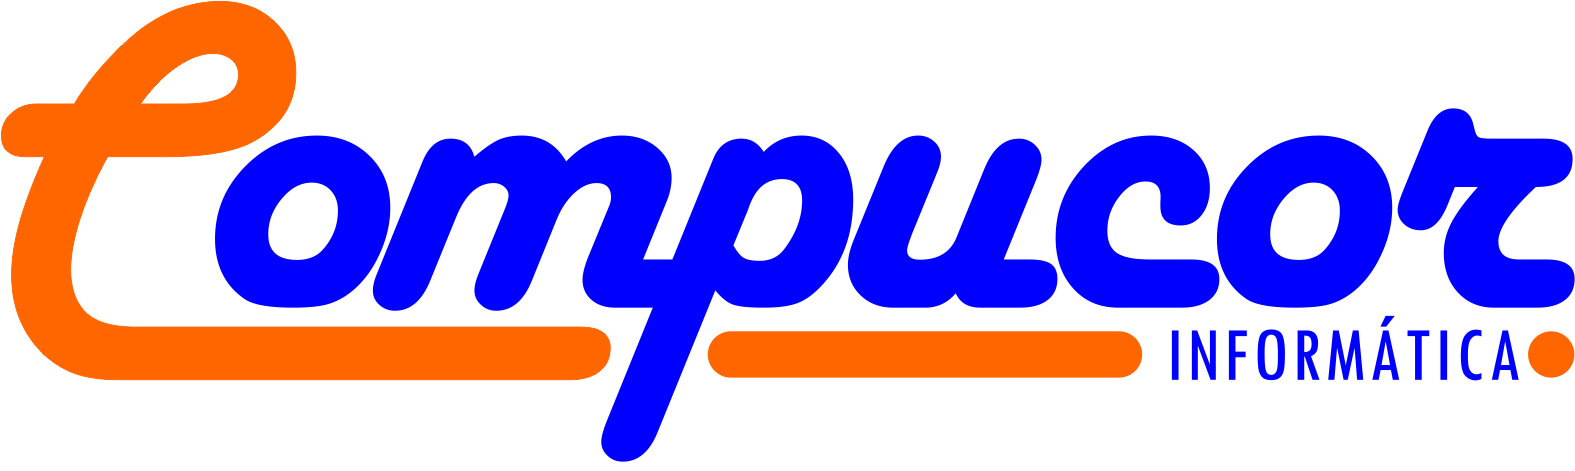 Logotipo Compucor Informática